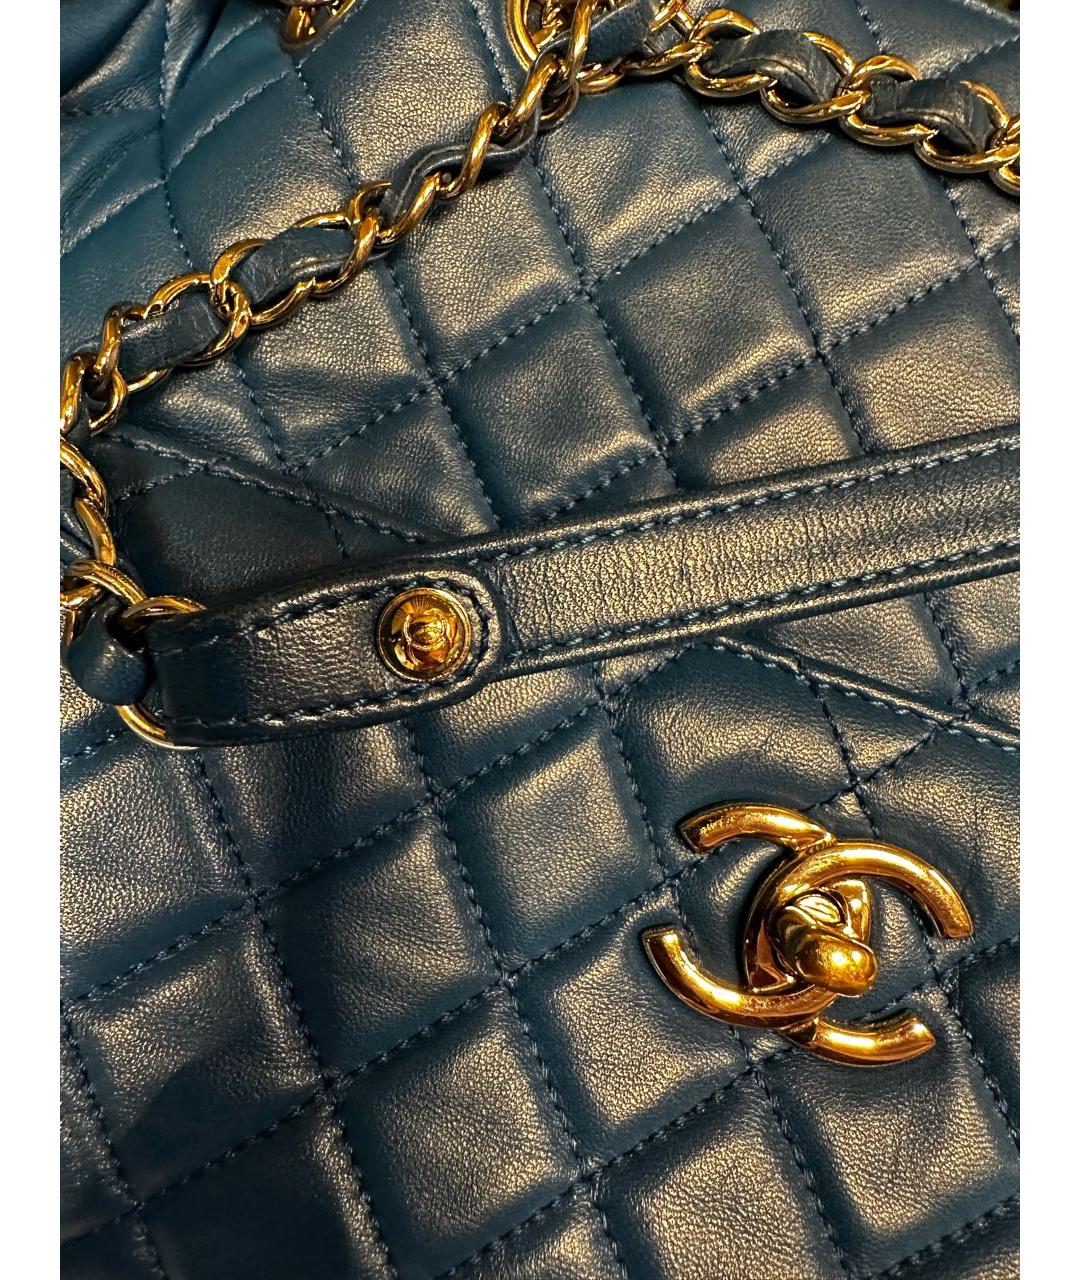 CHANEL PRE-OWNED Синяя кожаная сумка через плечо, фото 2